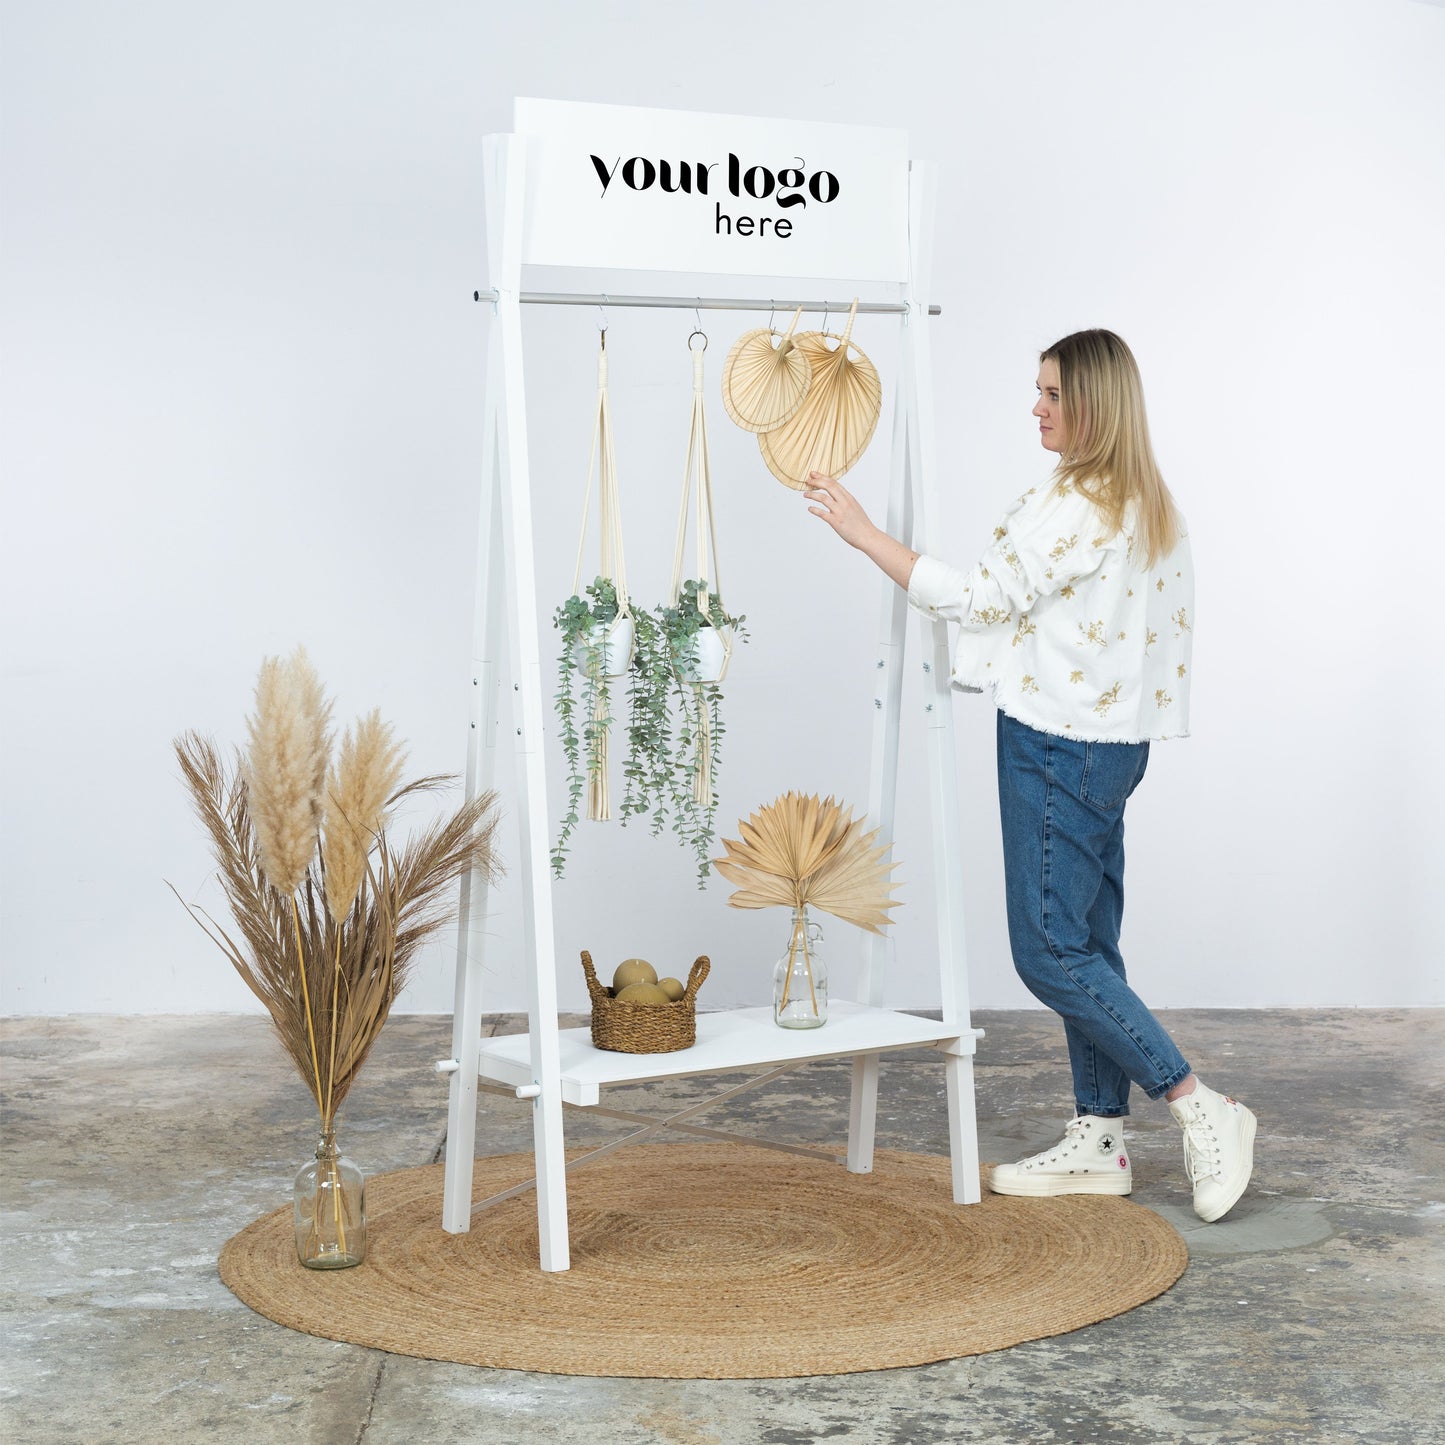 Tragbarer Kleiderständer aus Holz VR-02-WT mit individueller Logotafel | Pop-up-Store